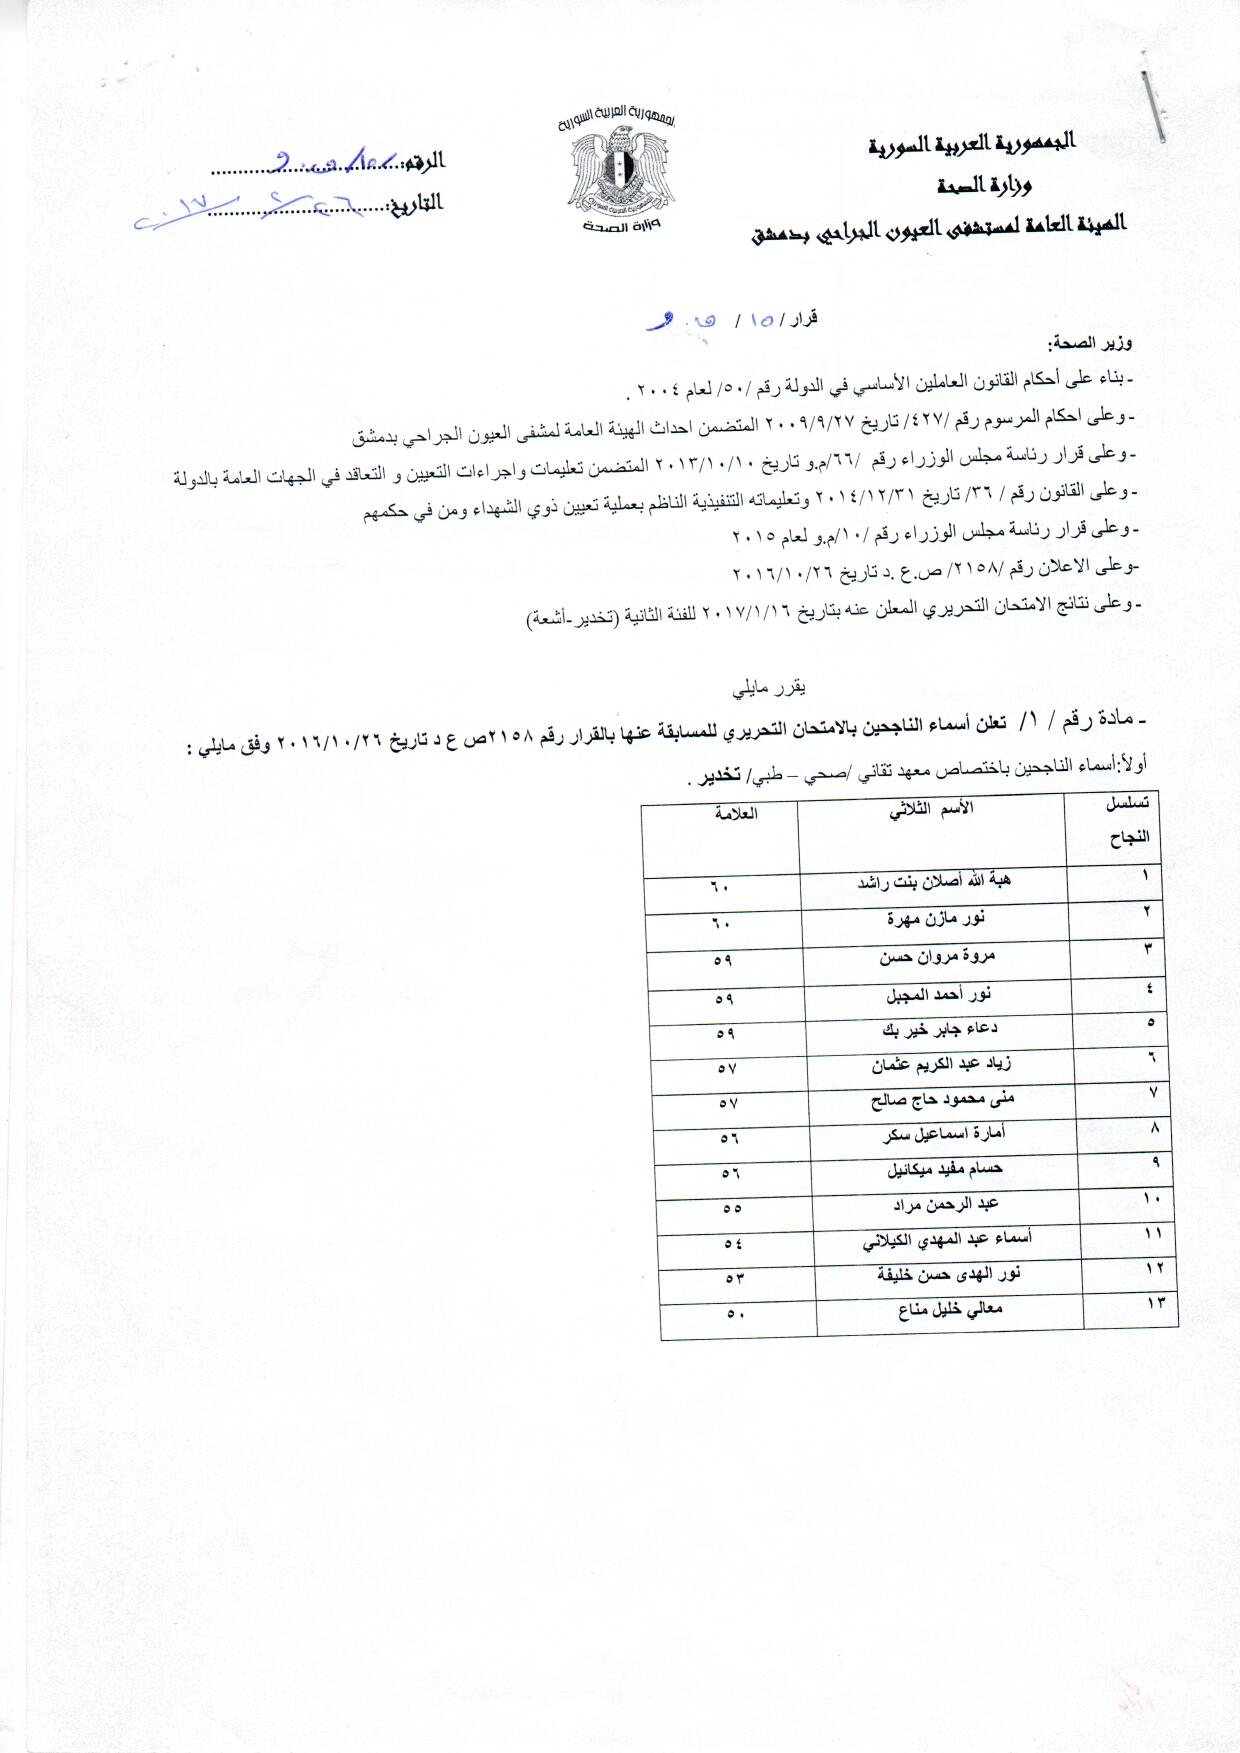 أسماء الناجحين بالأمتحان التحريري للمسابقة /تخدير - أشعة/